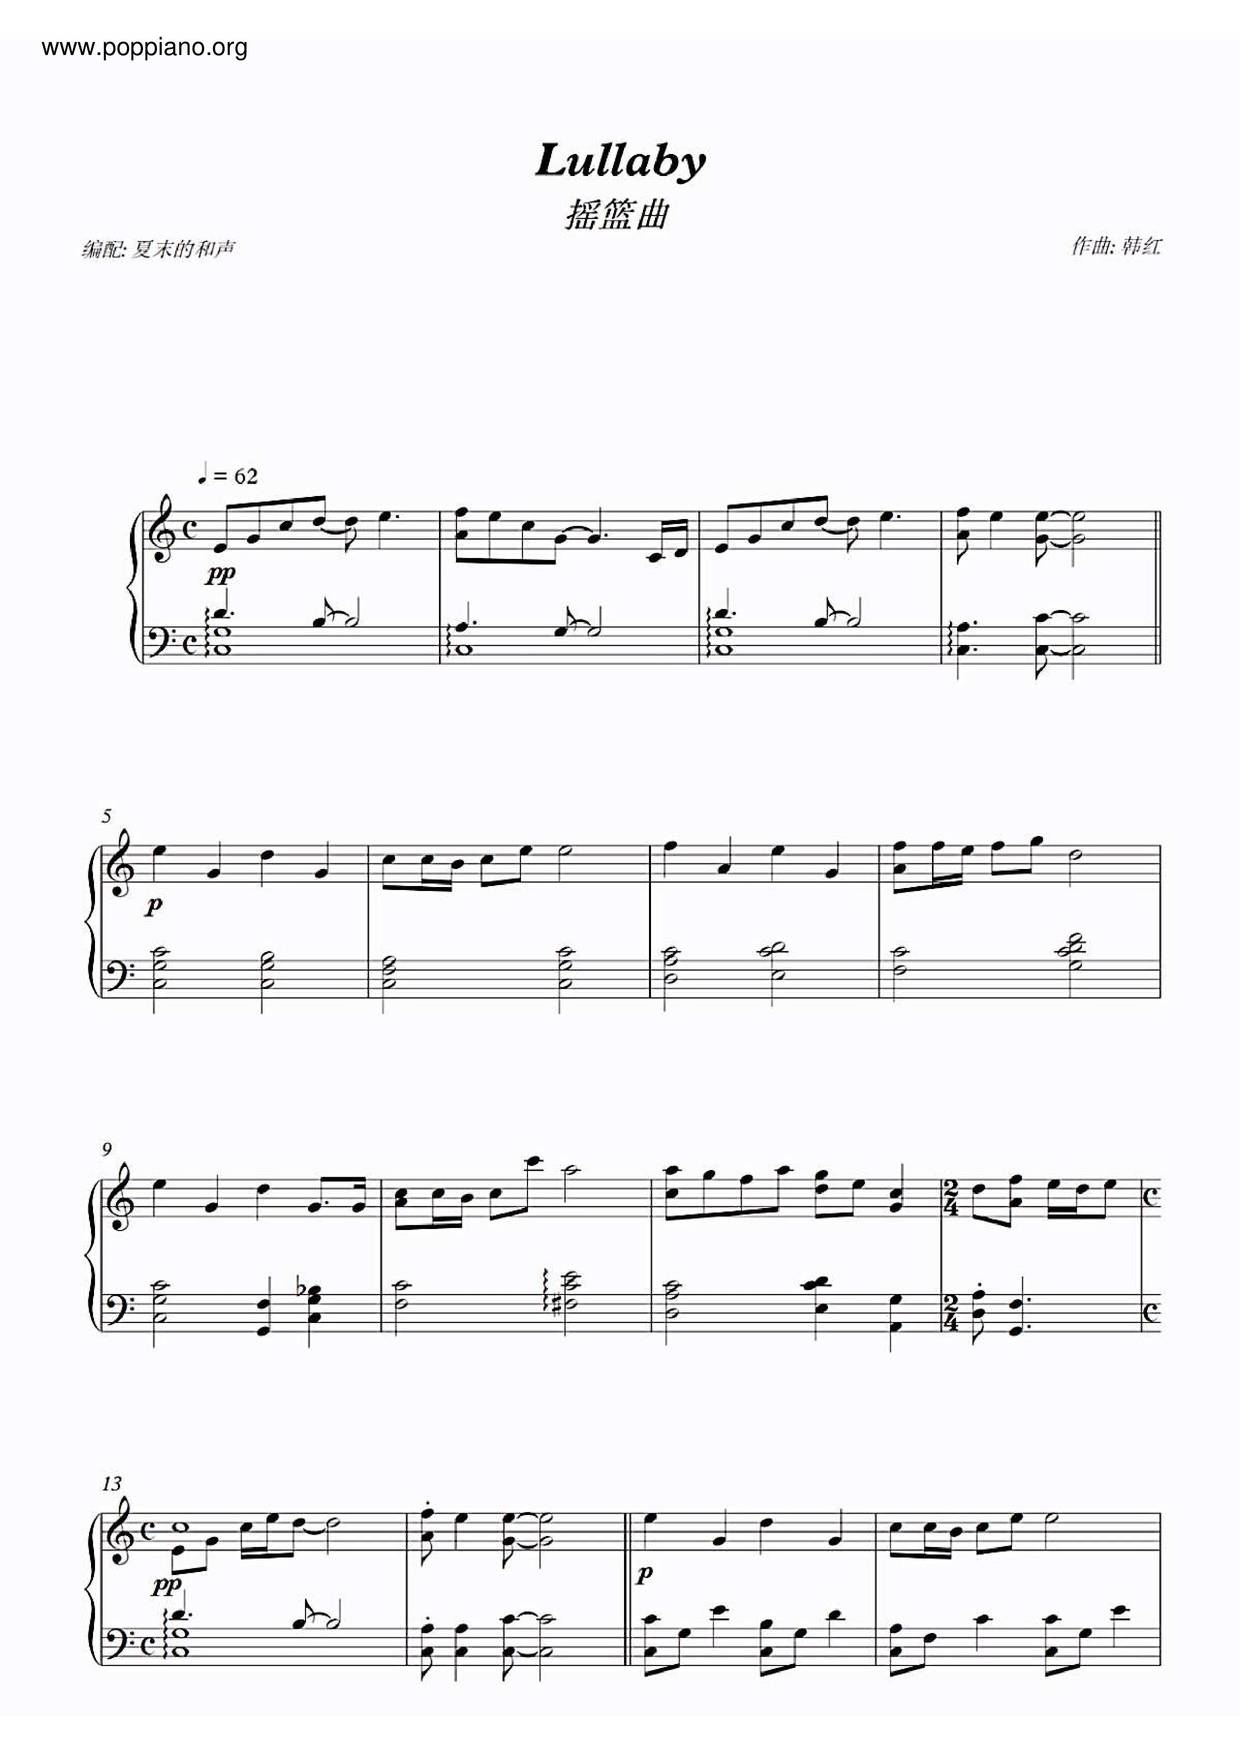 Lullabyピアノ譜